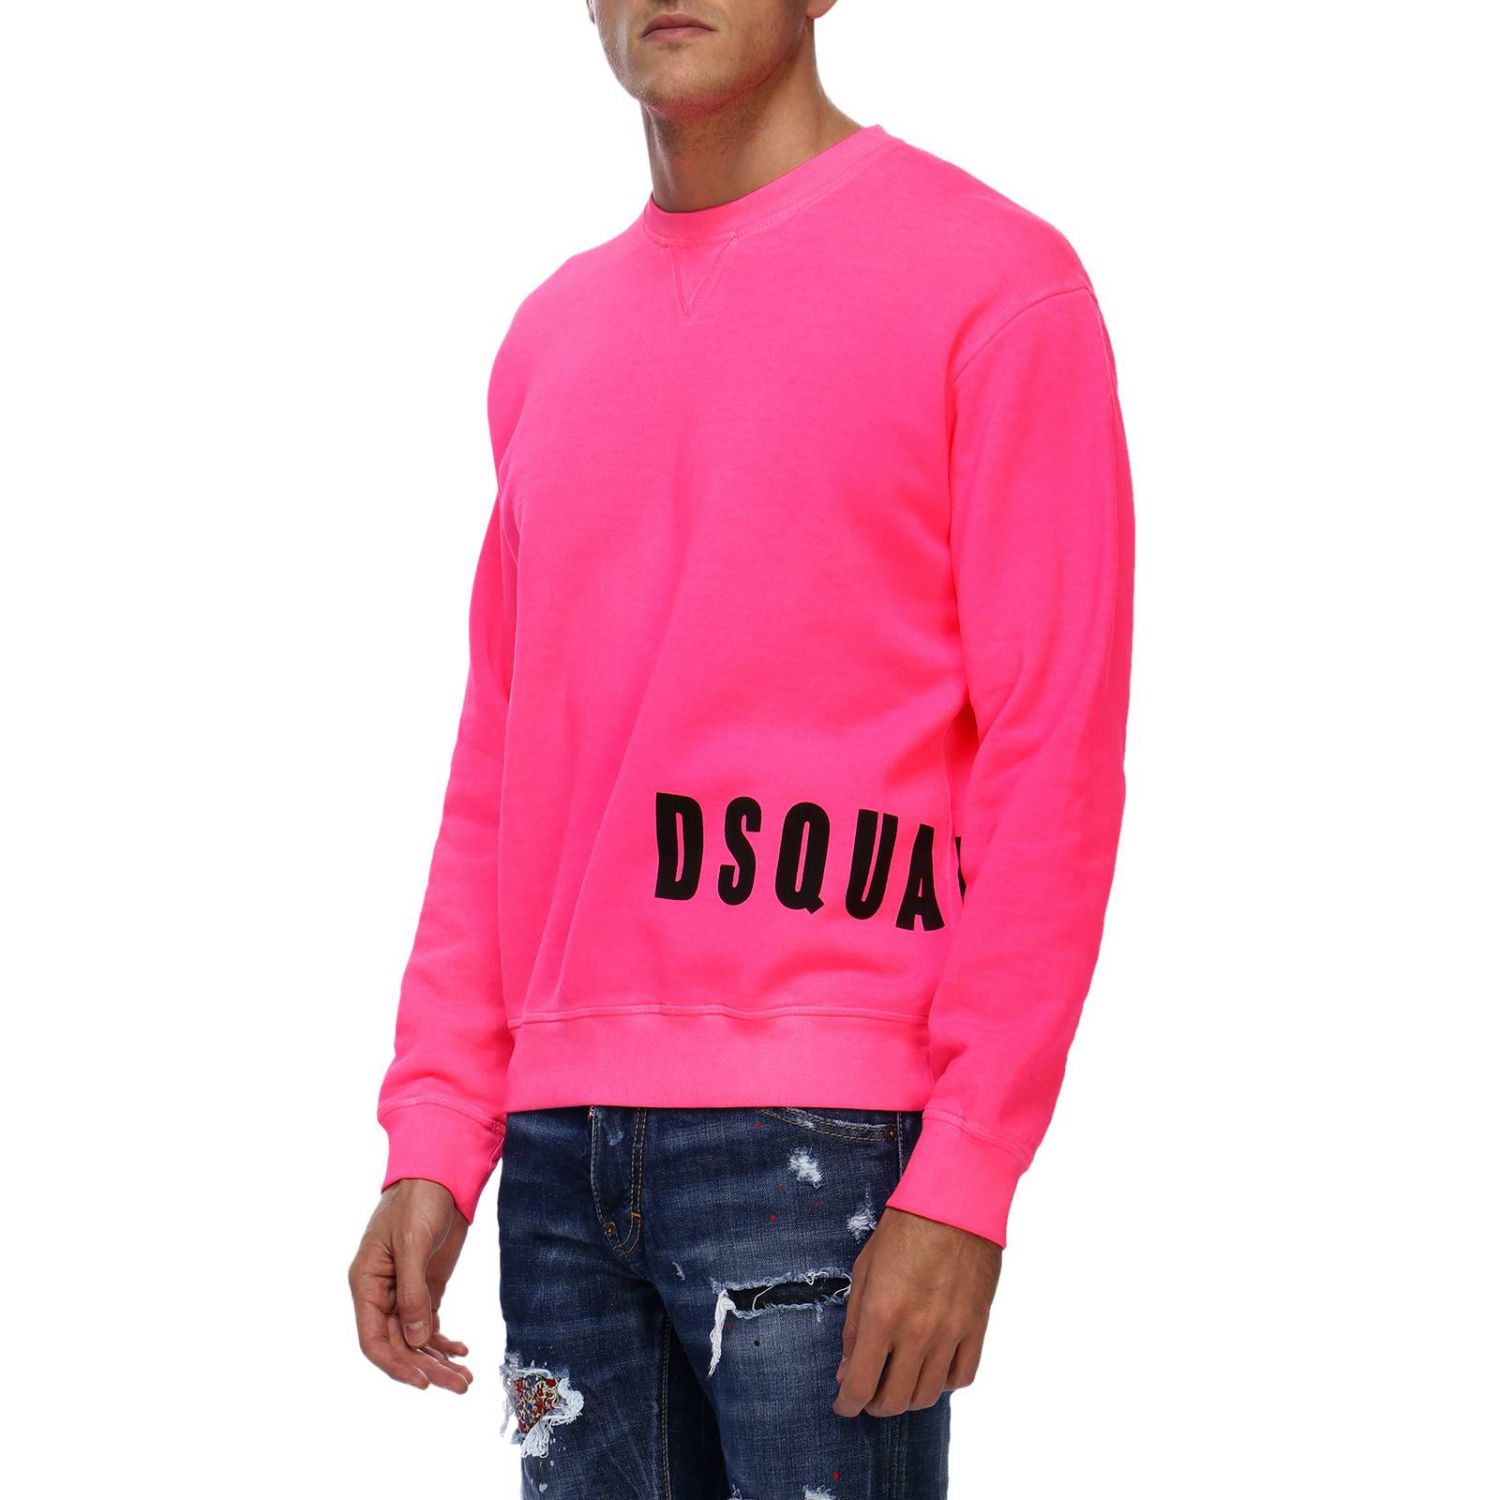 dsquared pink jumper